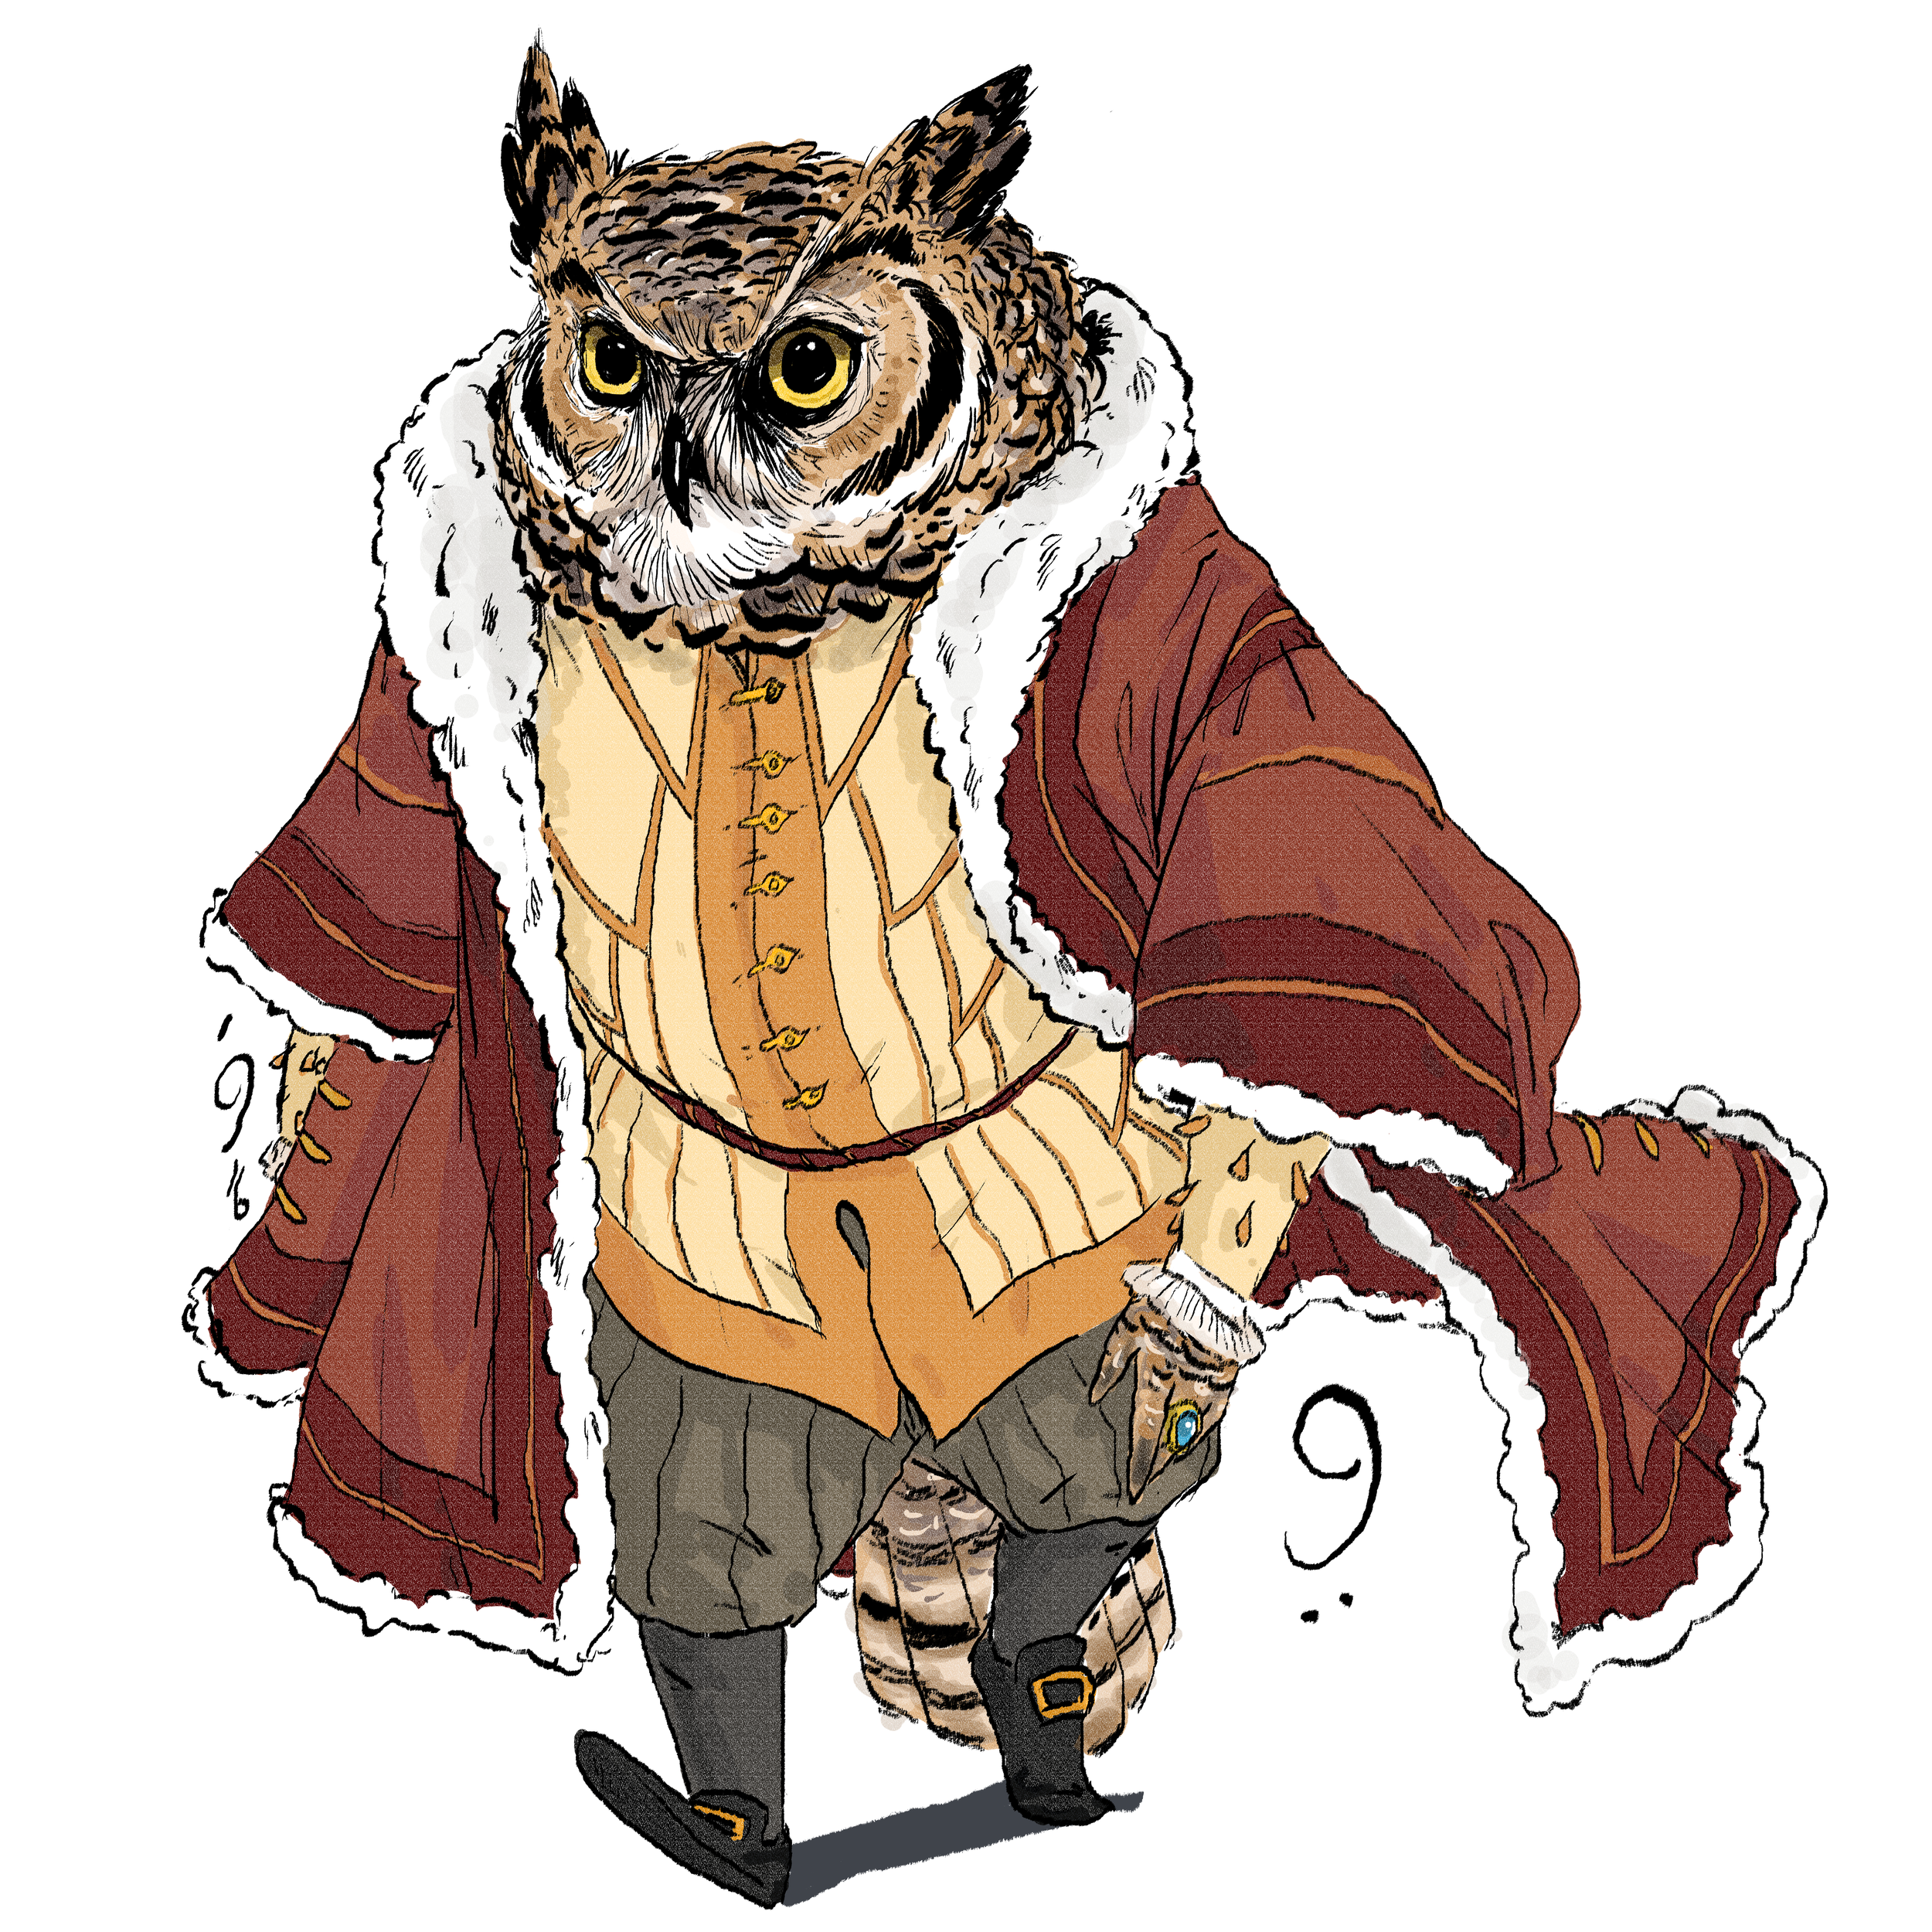 Sir Owl, Upperclass